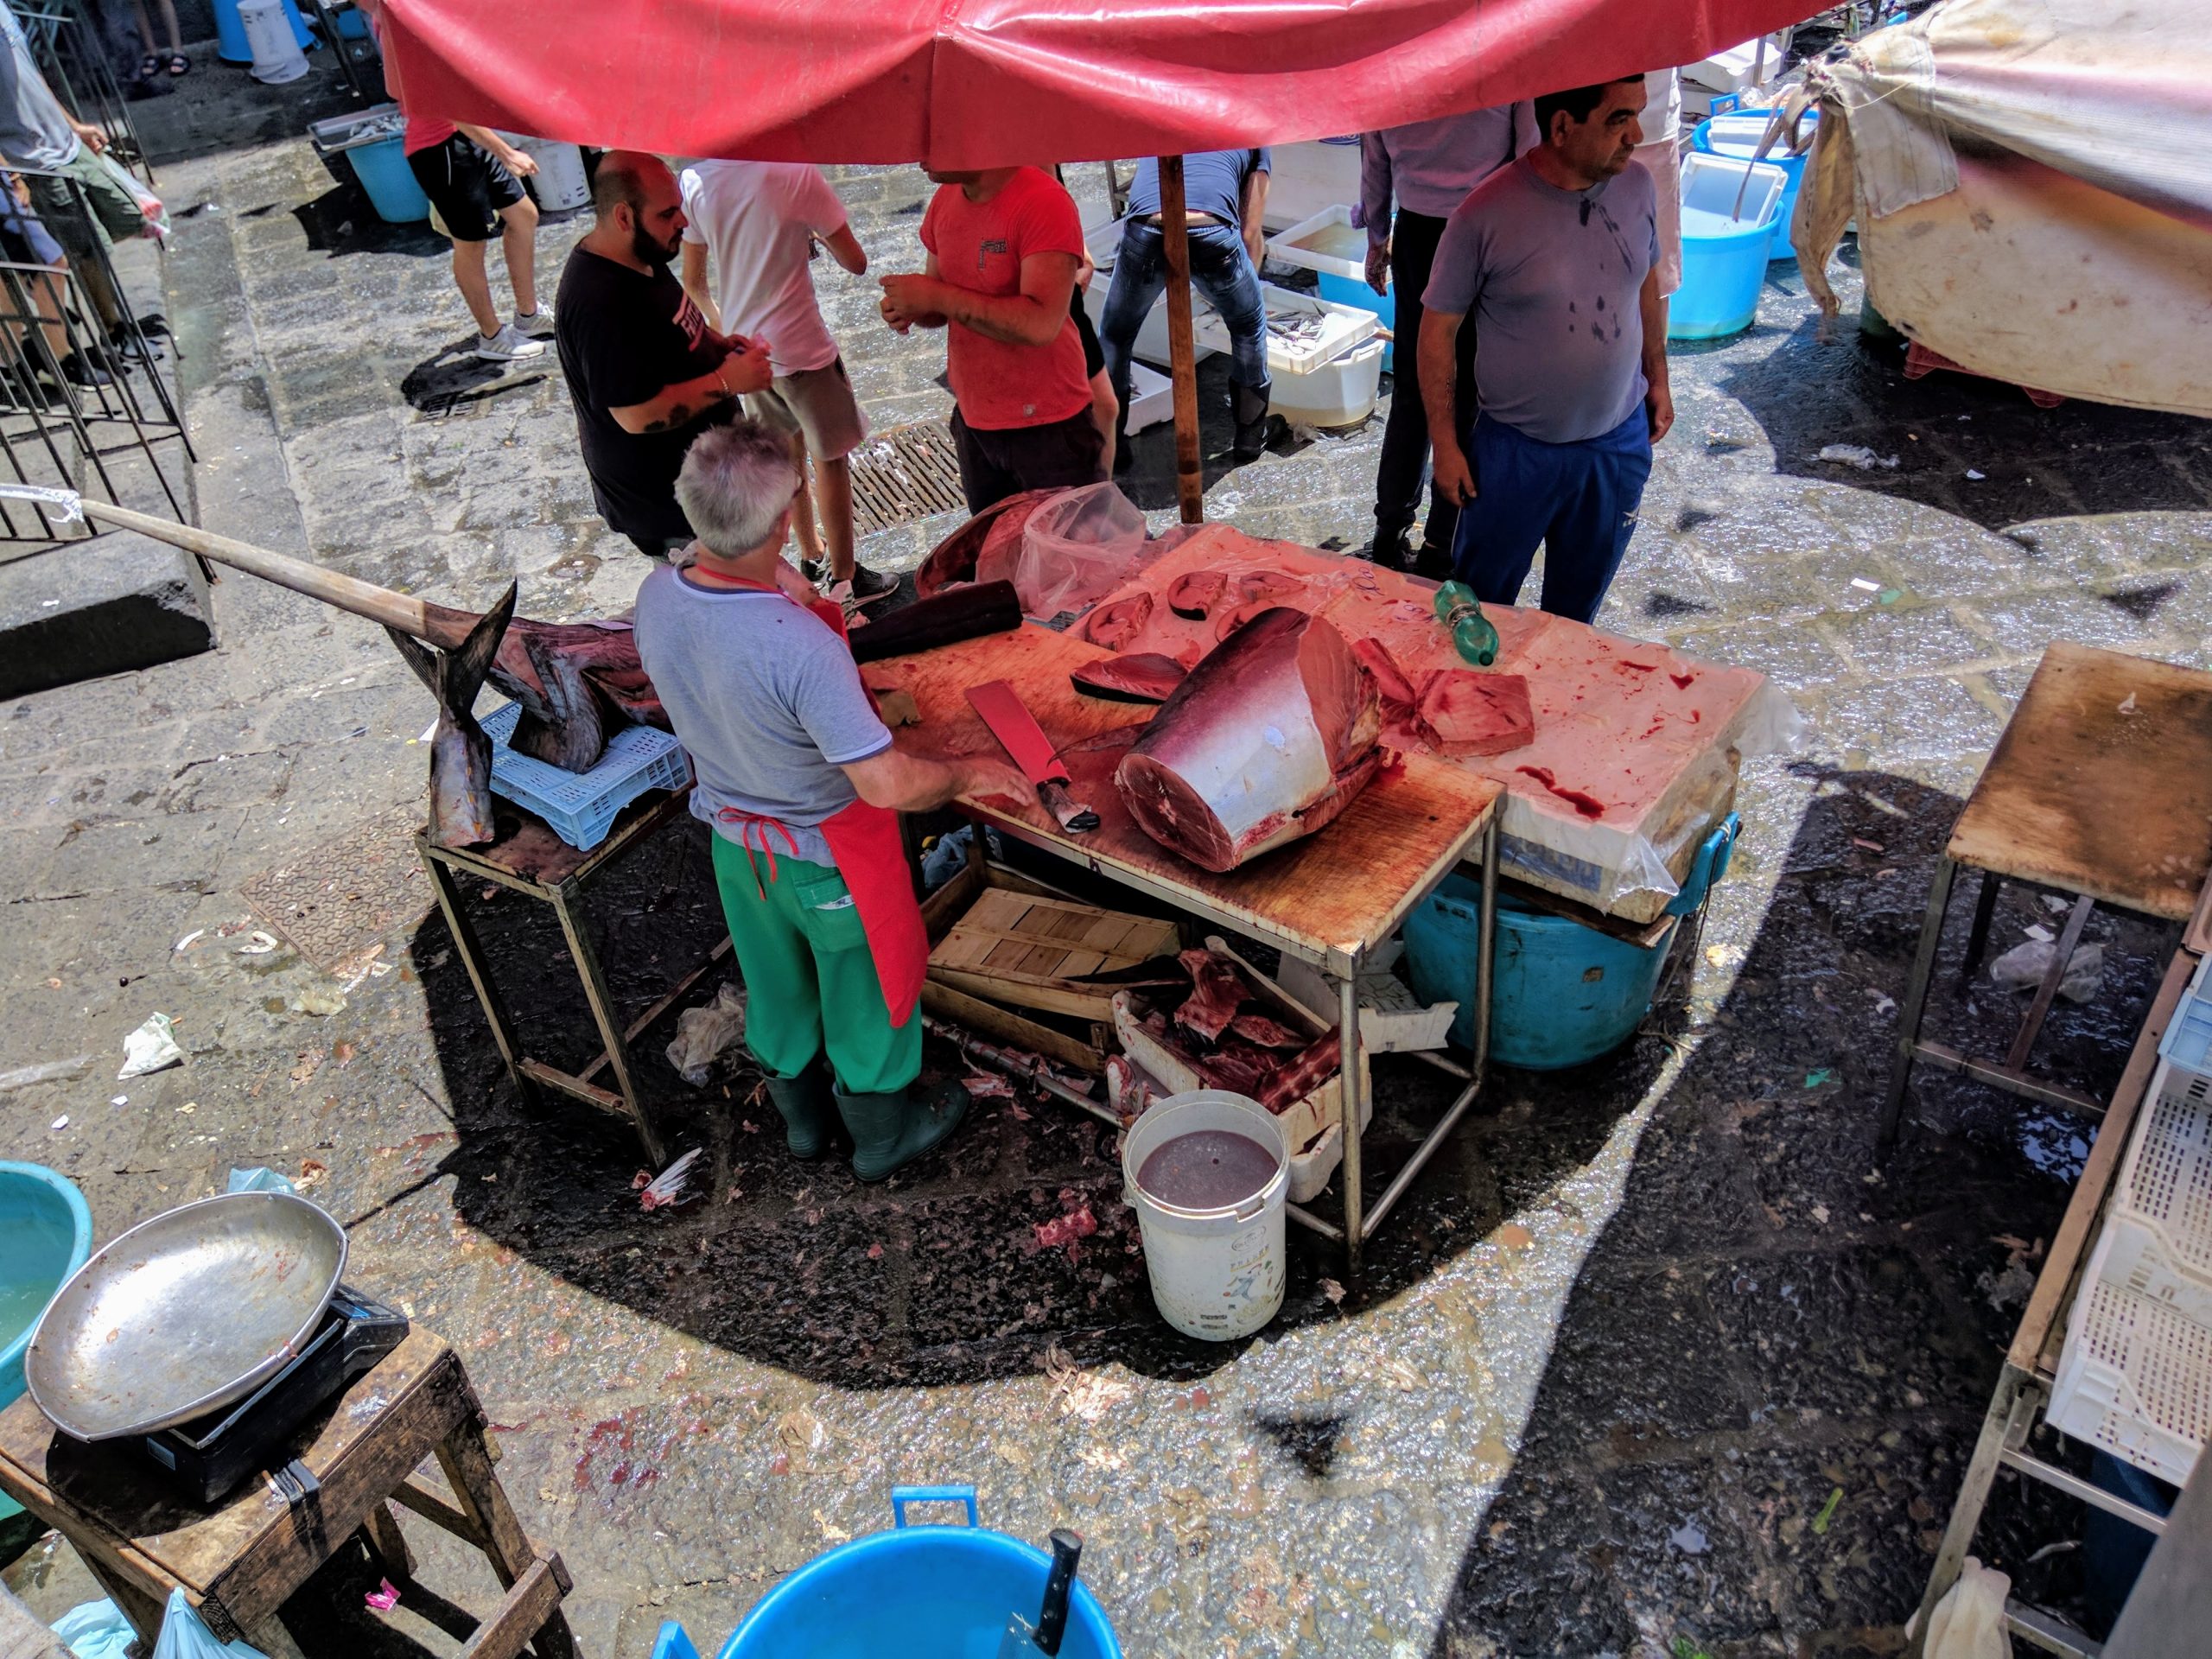 Catania Fish Market (La Pescheria), Sicily